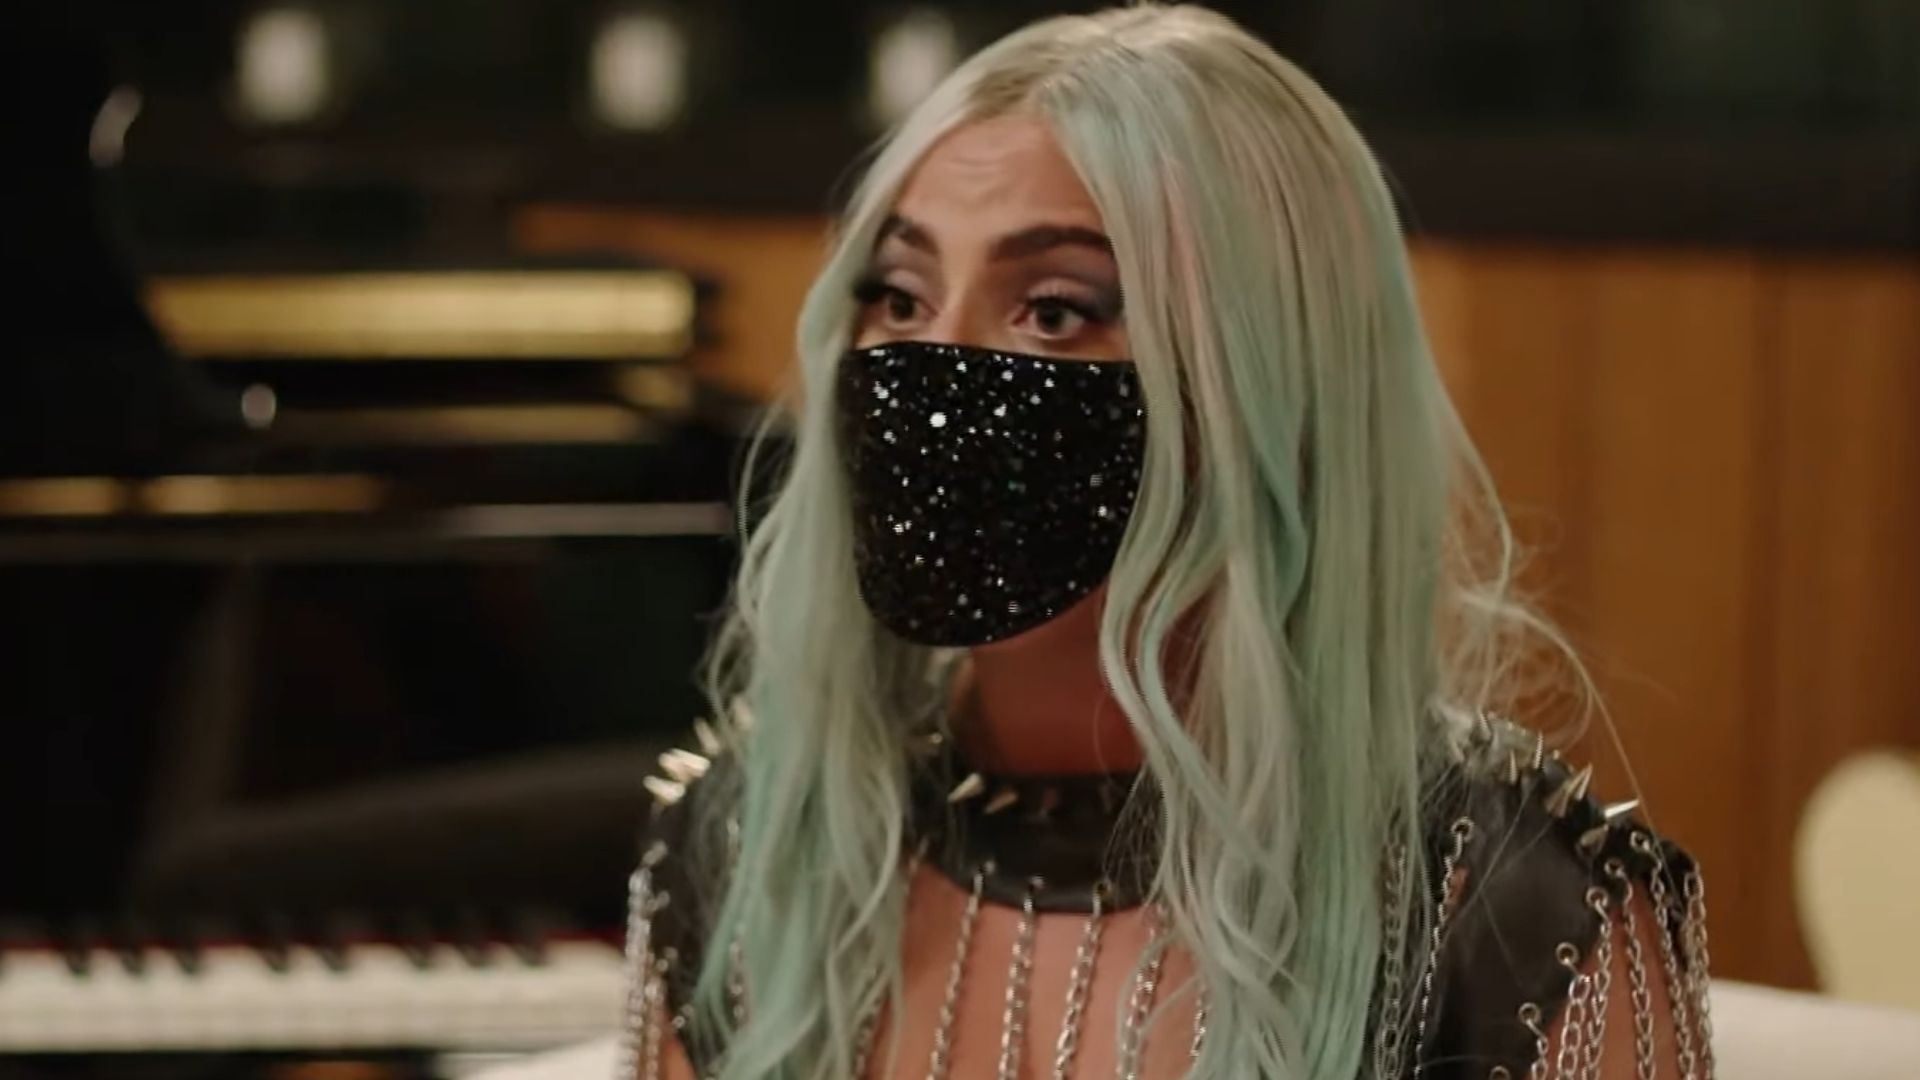 Em entrevista, Lady Gaga fala sobre piores momentos da carreira e revela ter odiado a própria persona